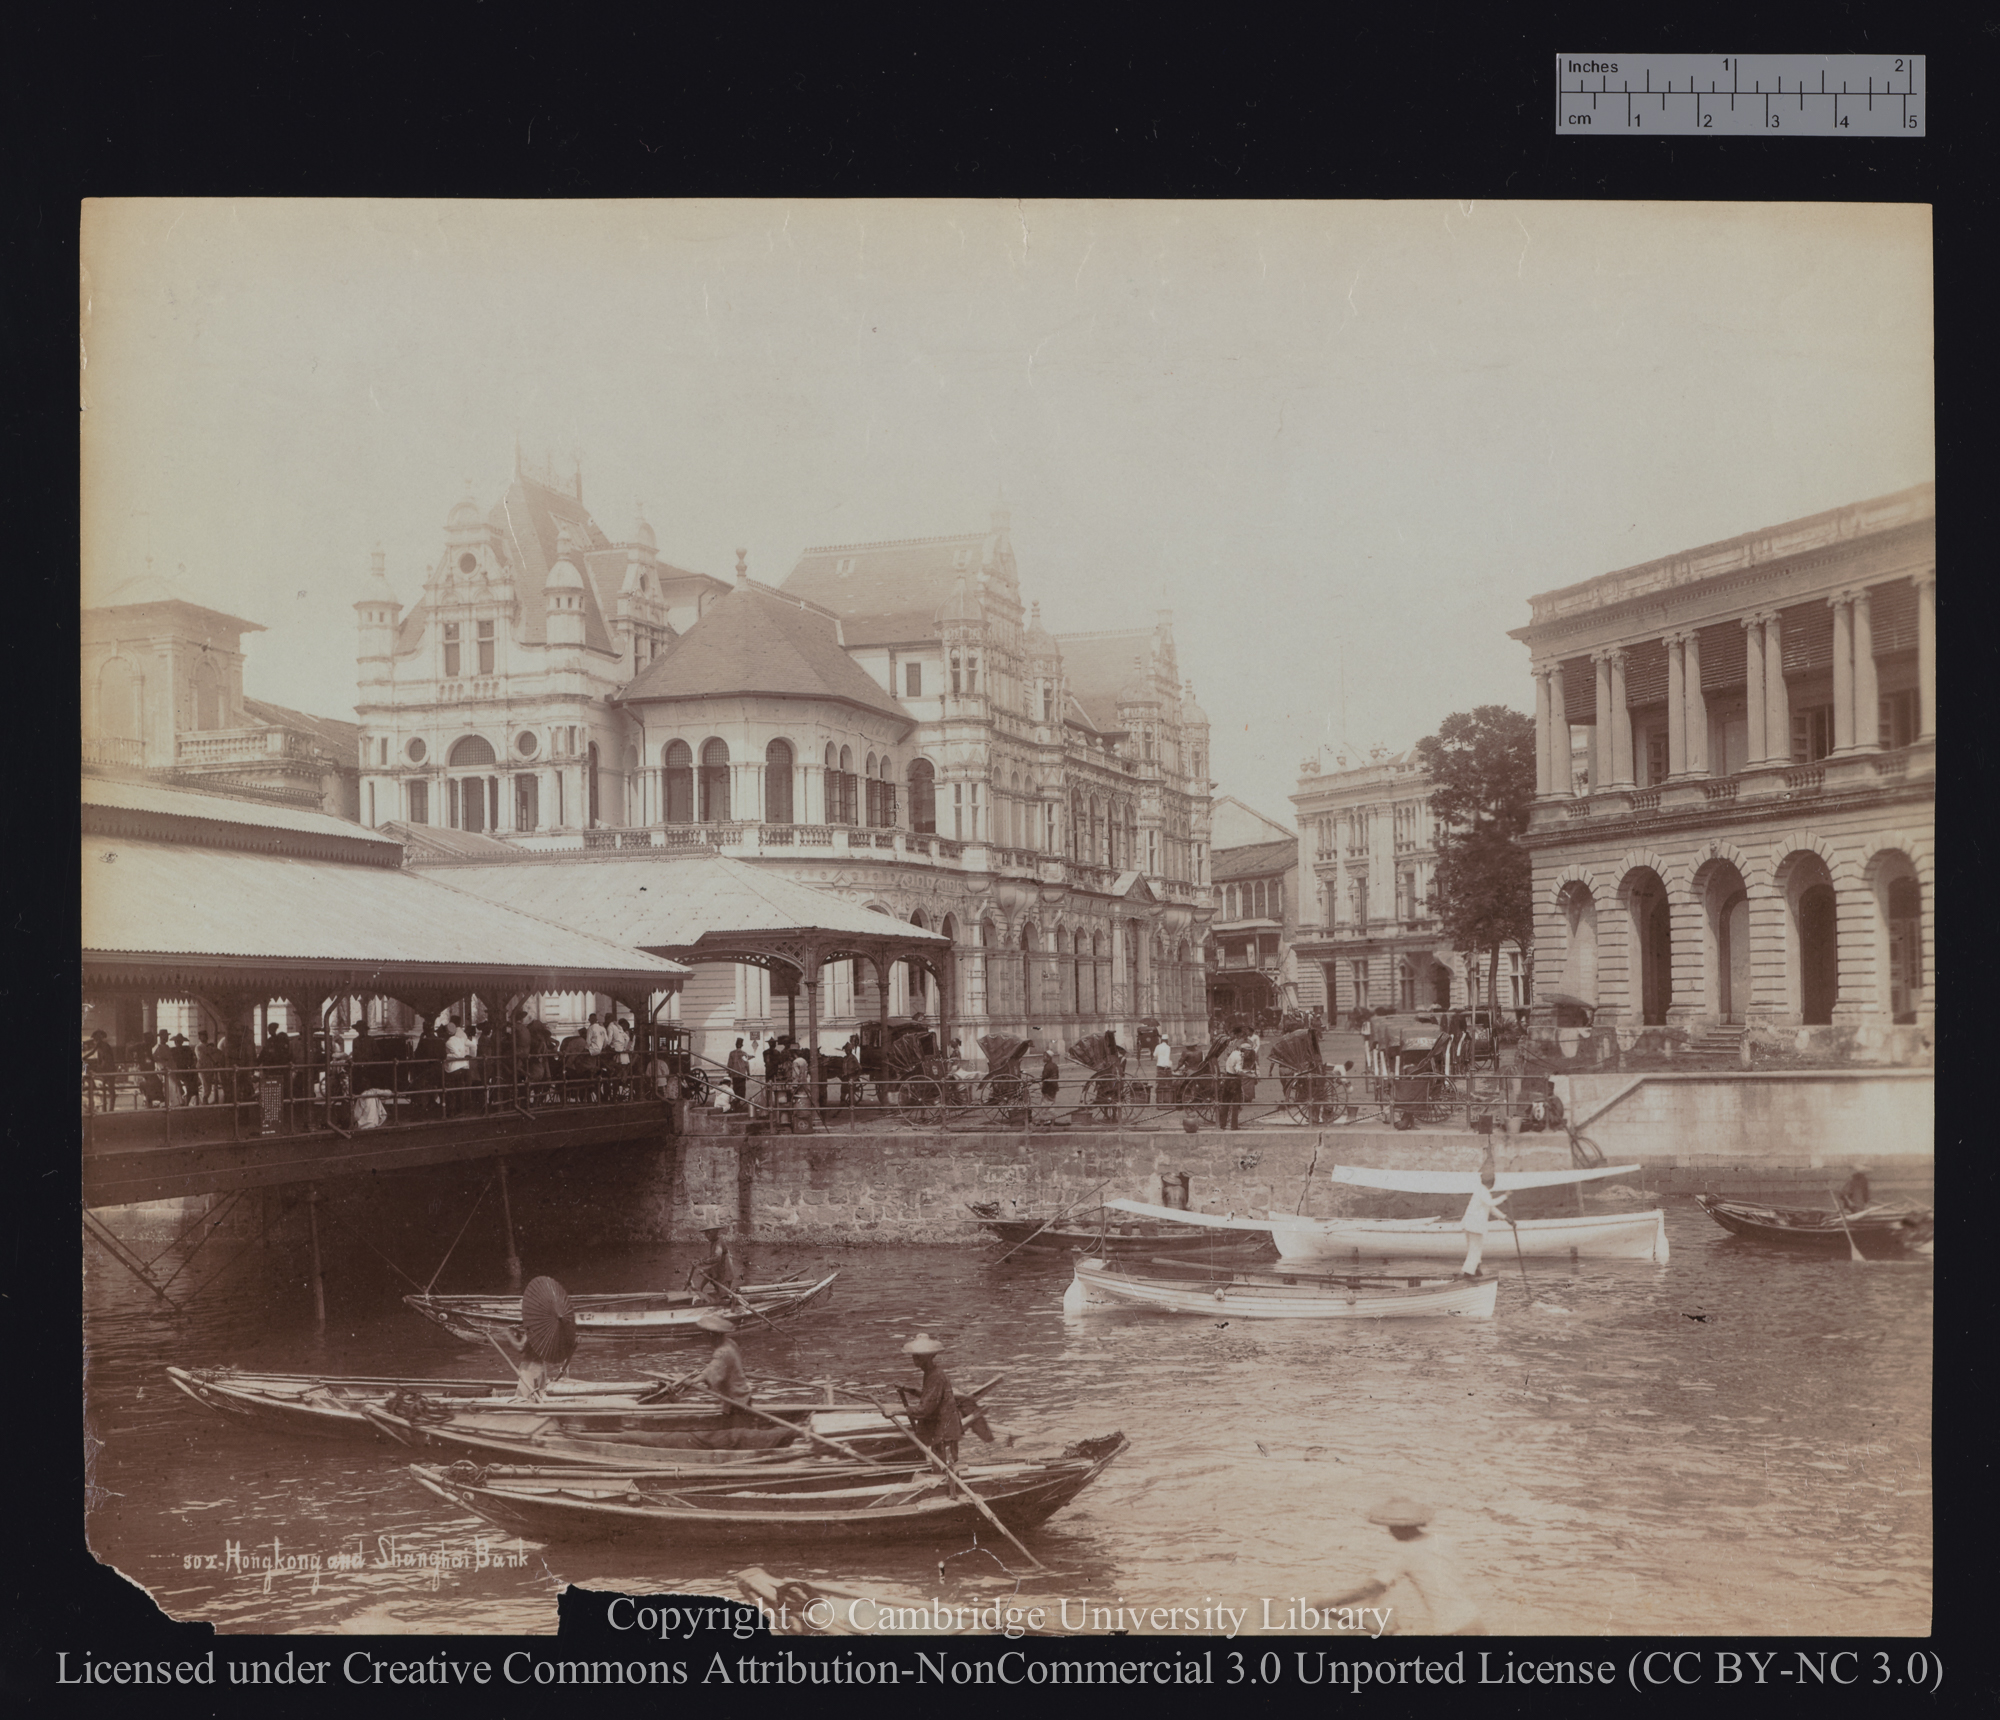 Hong Kong and Shanghai Bank, 1890 - 1899